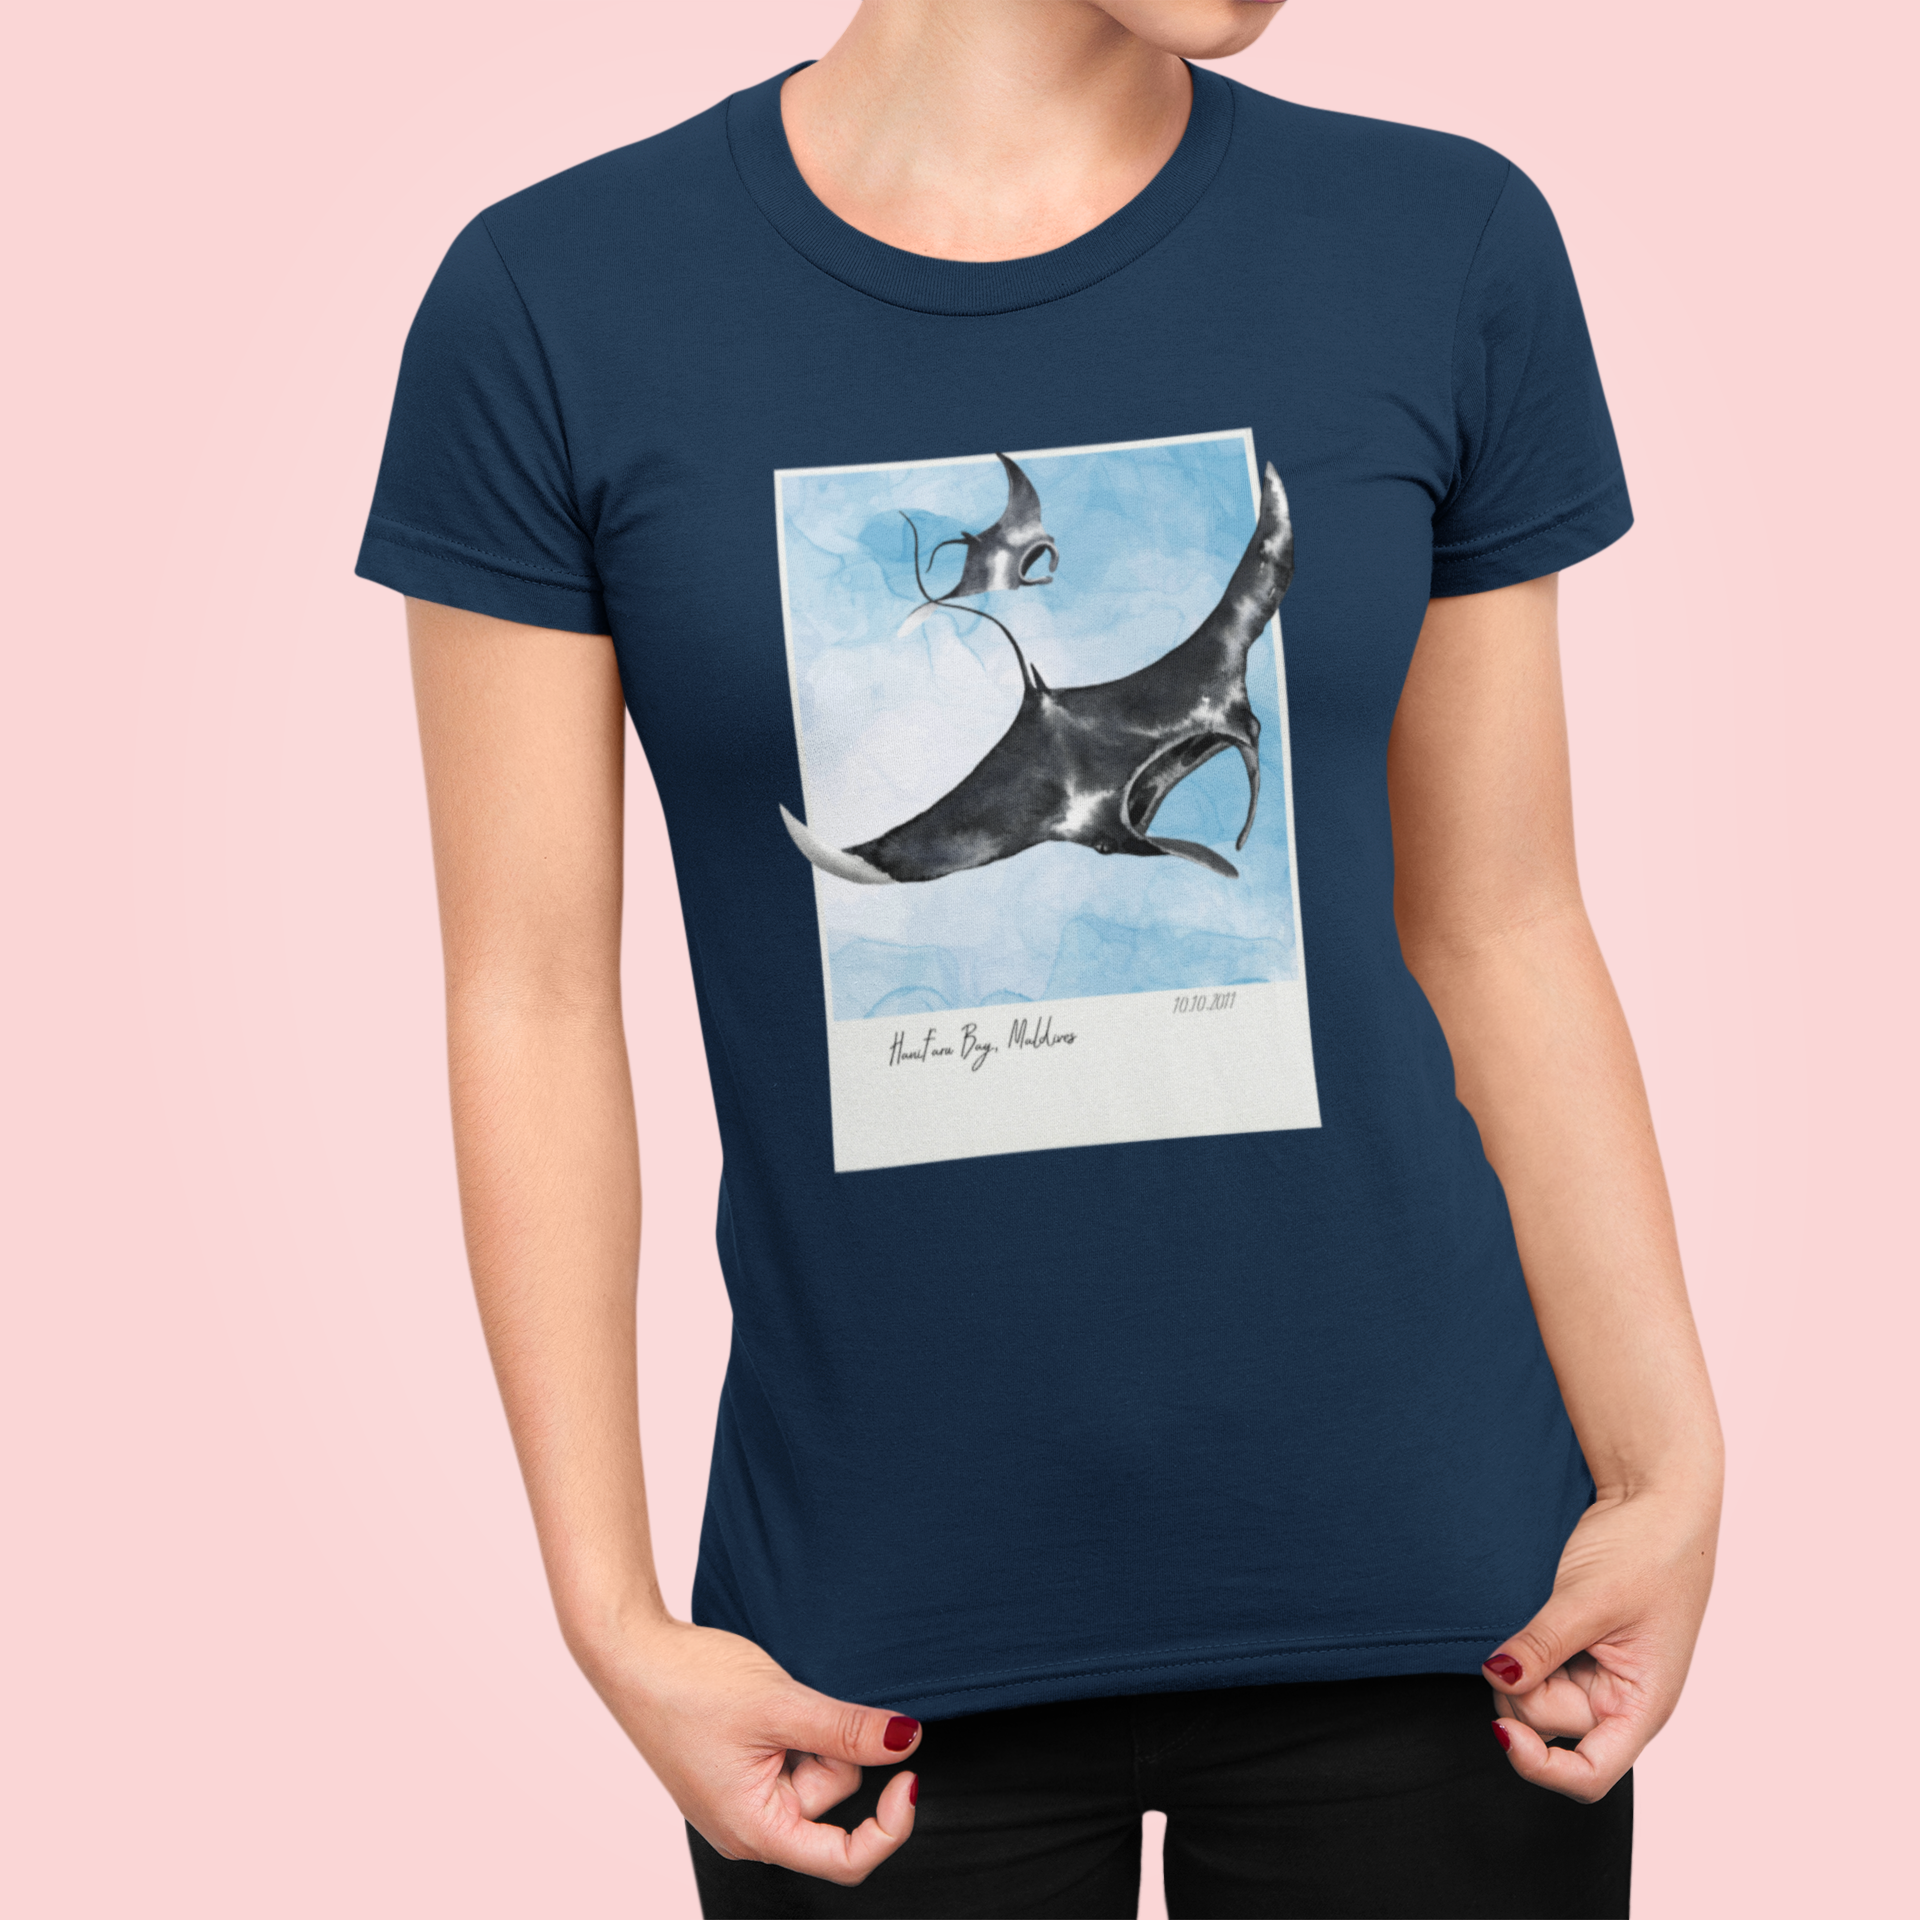 manta ray t-shirt for woman